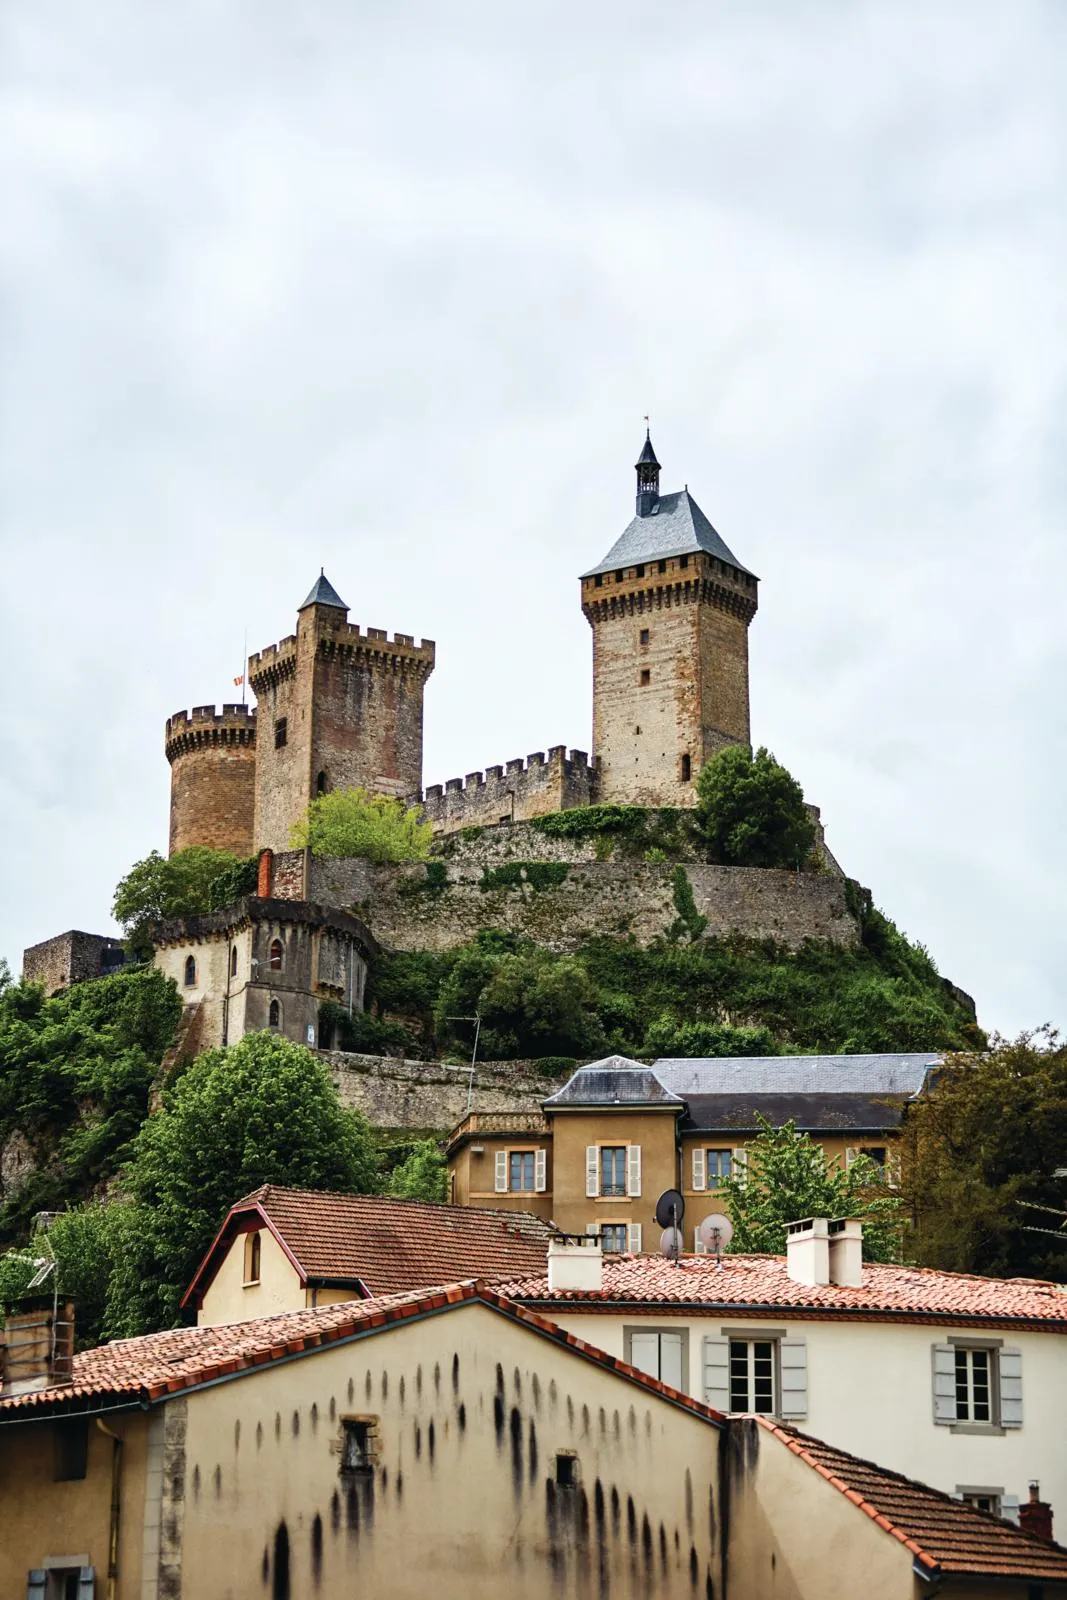 Medieval church house, Château de Foix.